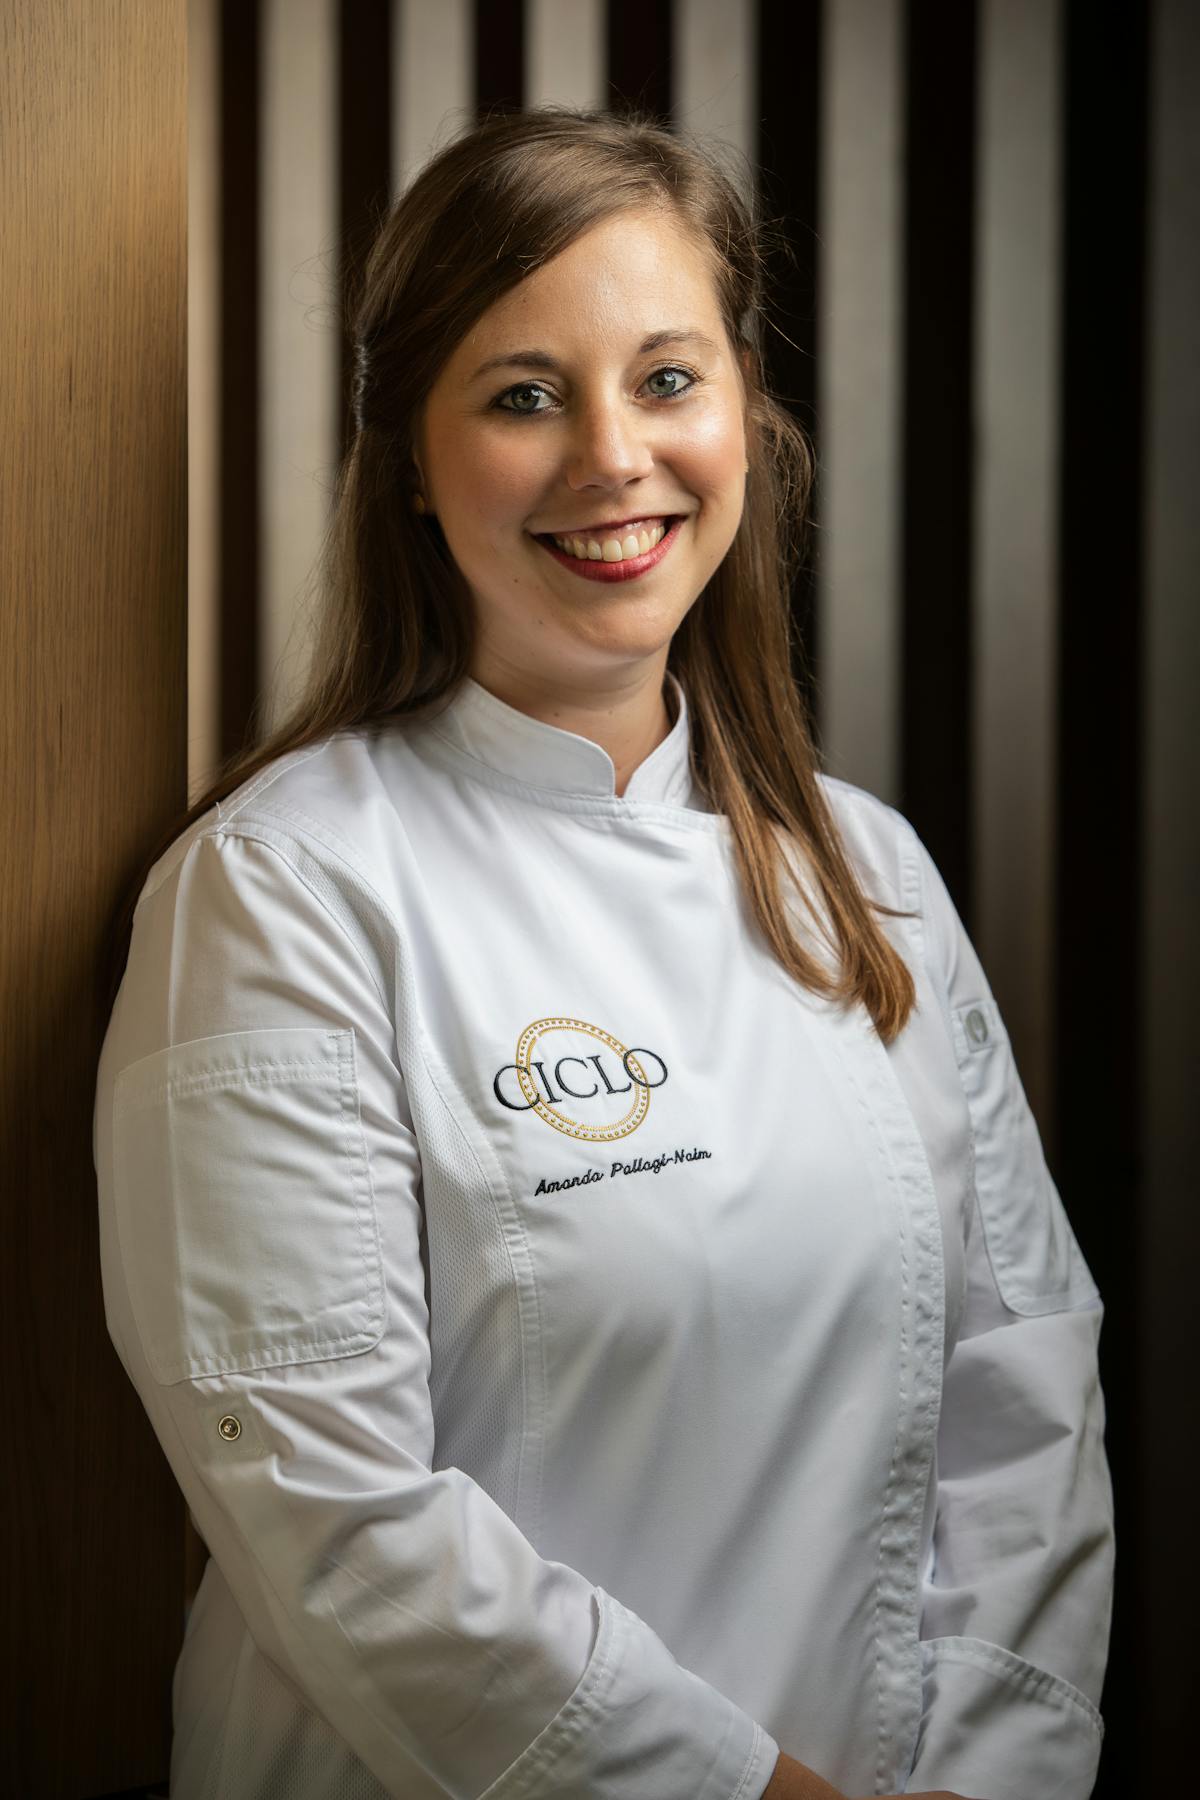 executive pastry chef Amanda Pallagi-Naim smiles at the camera